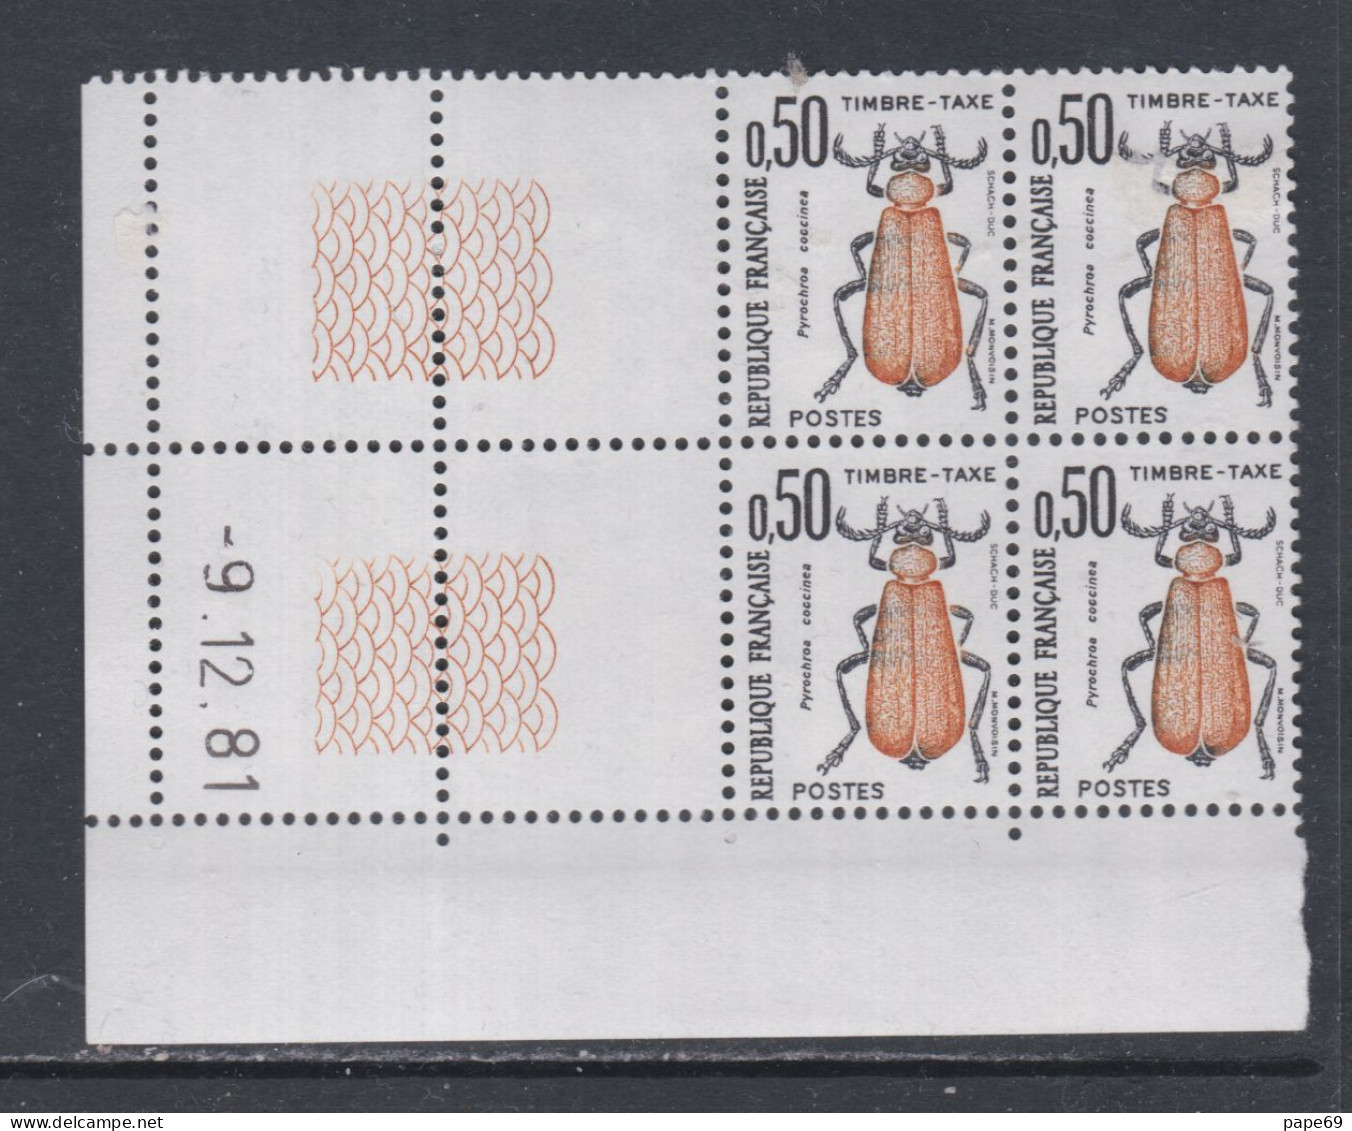 France Timbres-Taxe N° 105 XX Insectes : 50 C. Coléoptère, En Bloc De 4 Coin Daté Du 9 . 12 . 81 ; Sans Trait, Ss Ch. TB - Impuestos